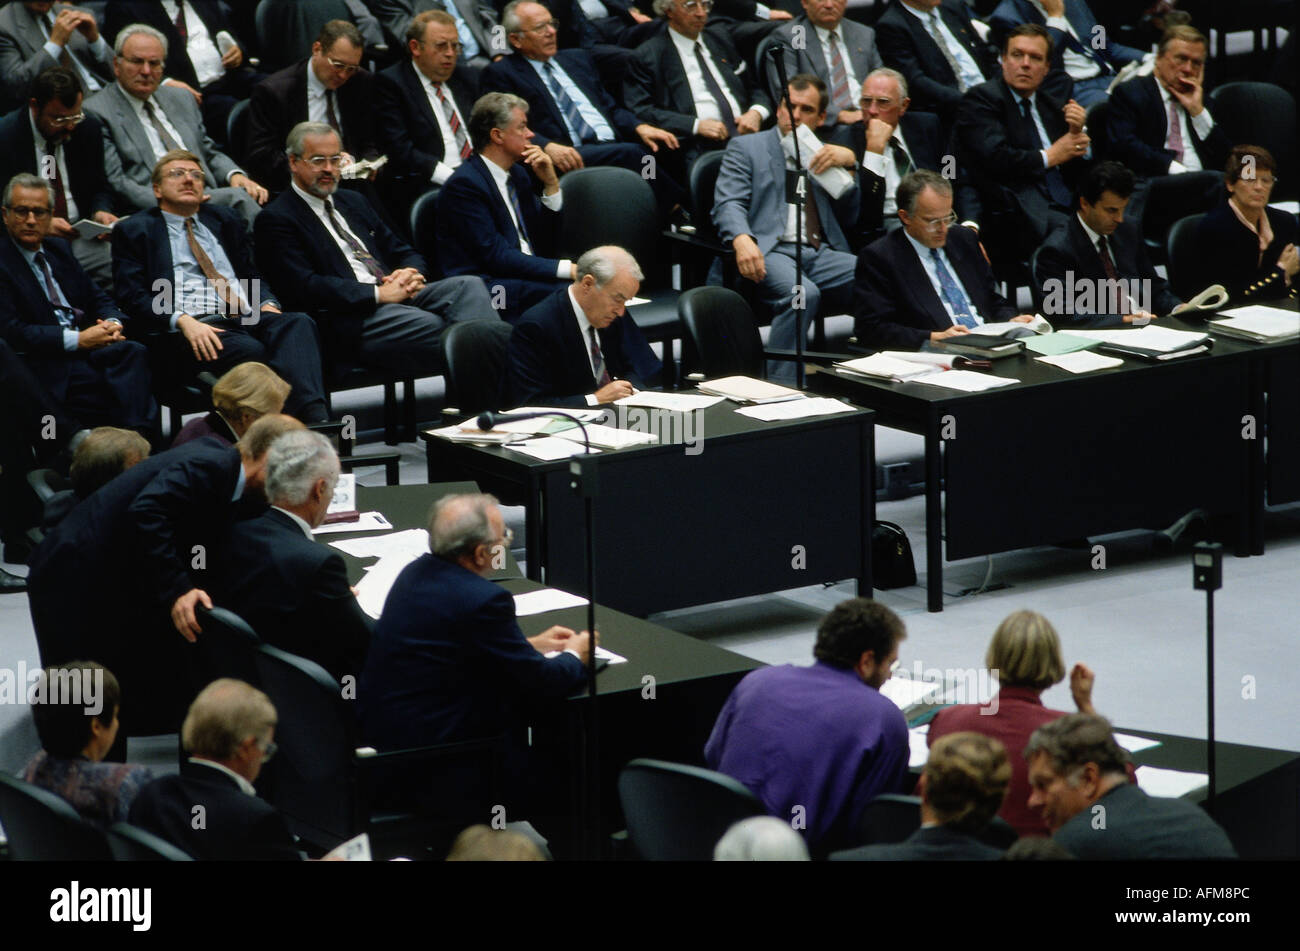 Geografía / tavel, Alemania, primer congreso después de la unificación alemana, Cámara Baja del Parlamento alemán, Berlín, 4.10.1990, Foto de stock